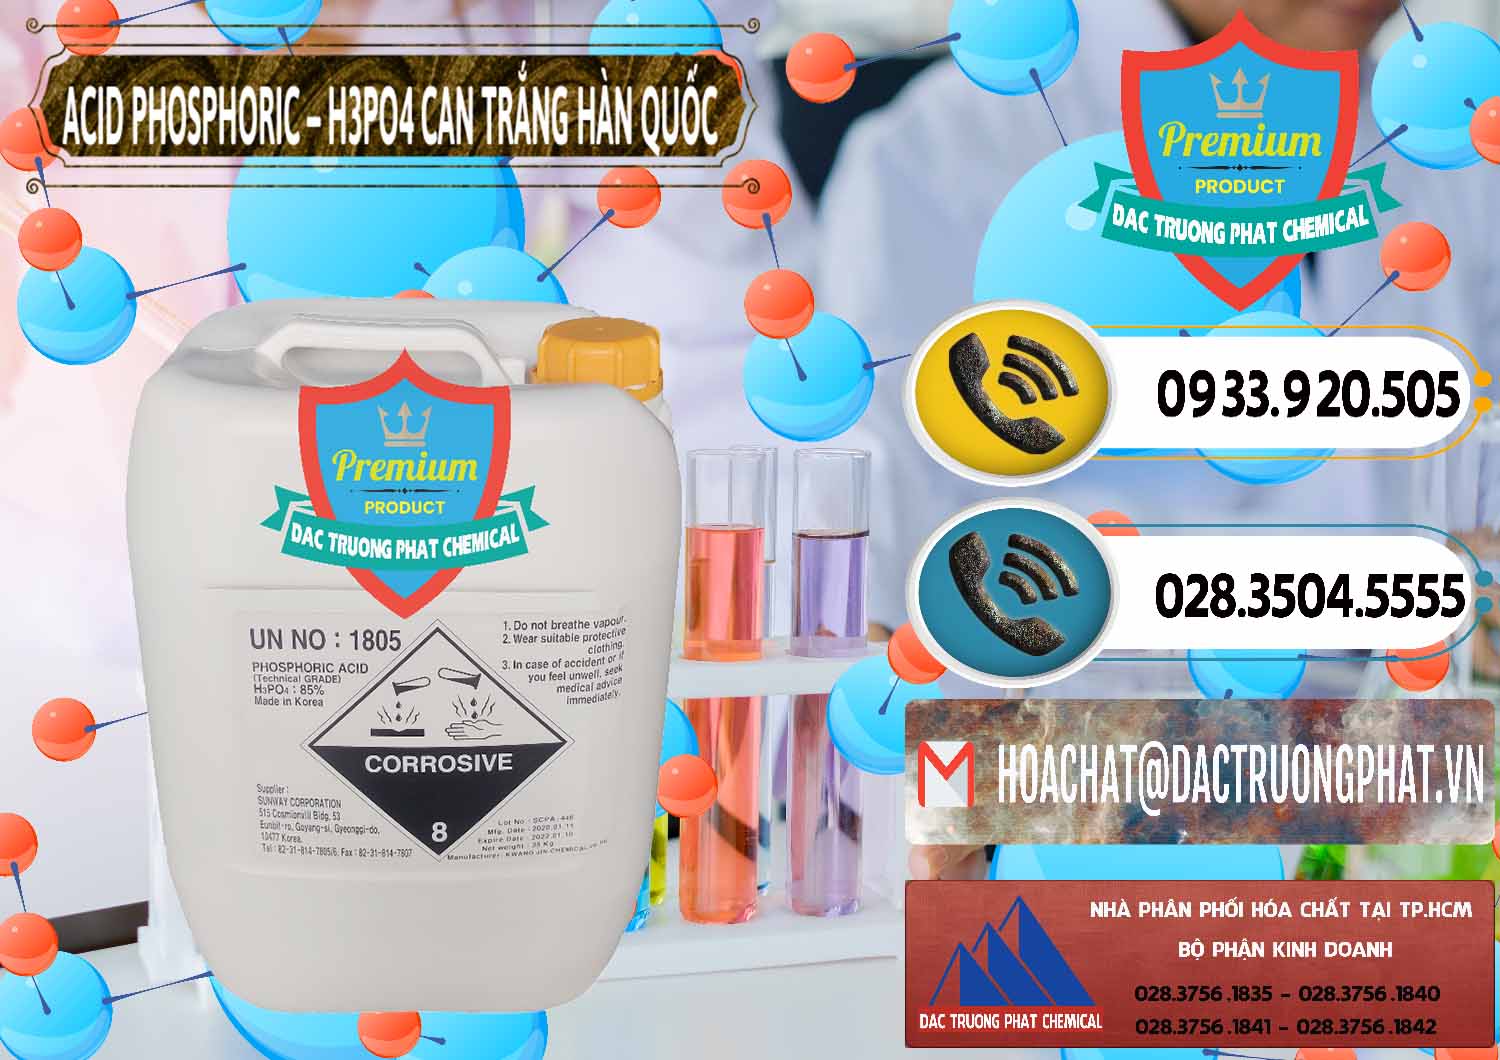 Đơn vị bán - cung ứng Acid Phosphoric - Axit Phosphoric H3PO4 Can Trắng Hàn Quốc Korea - 0017 - Nơi chuyên cung cấp ( nhập khẩu ) hóa chất tại TP.HCM - hoachatdetnhuom.vn